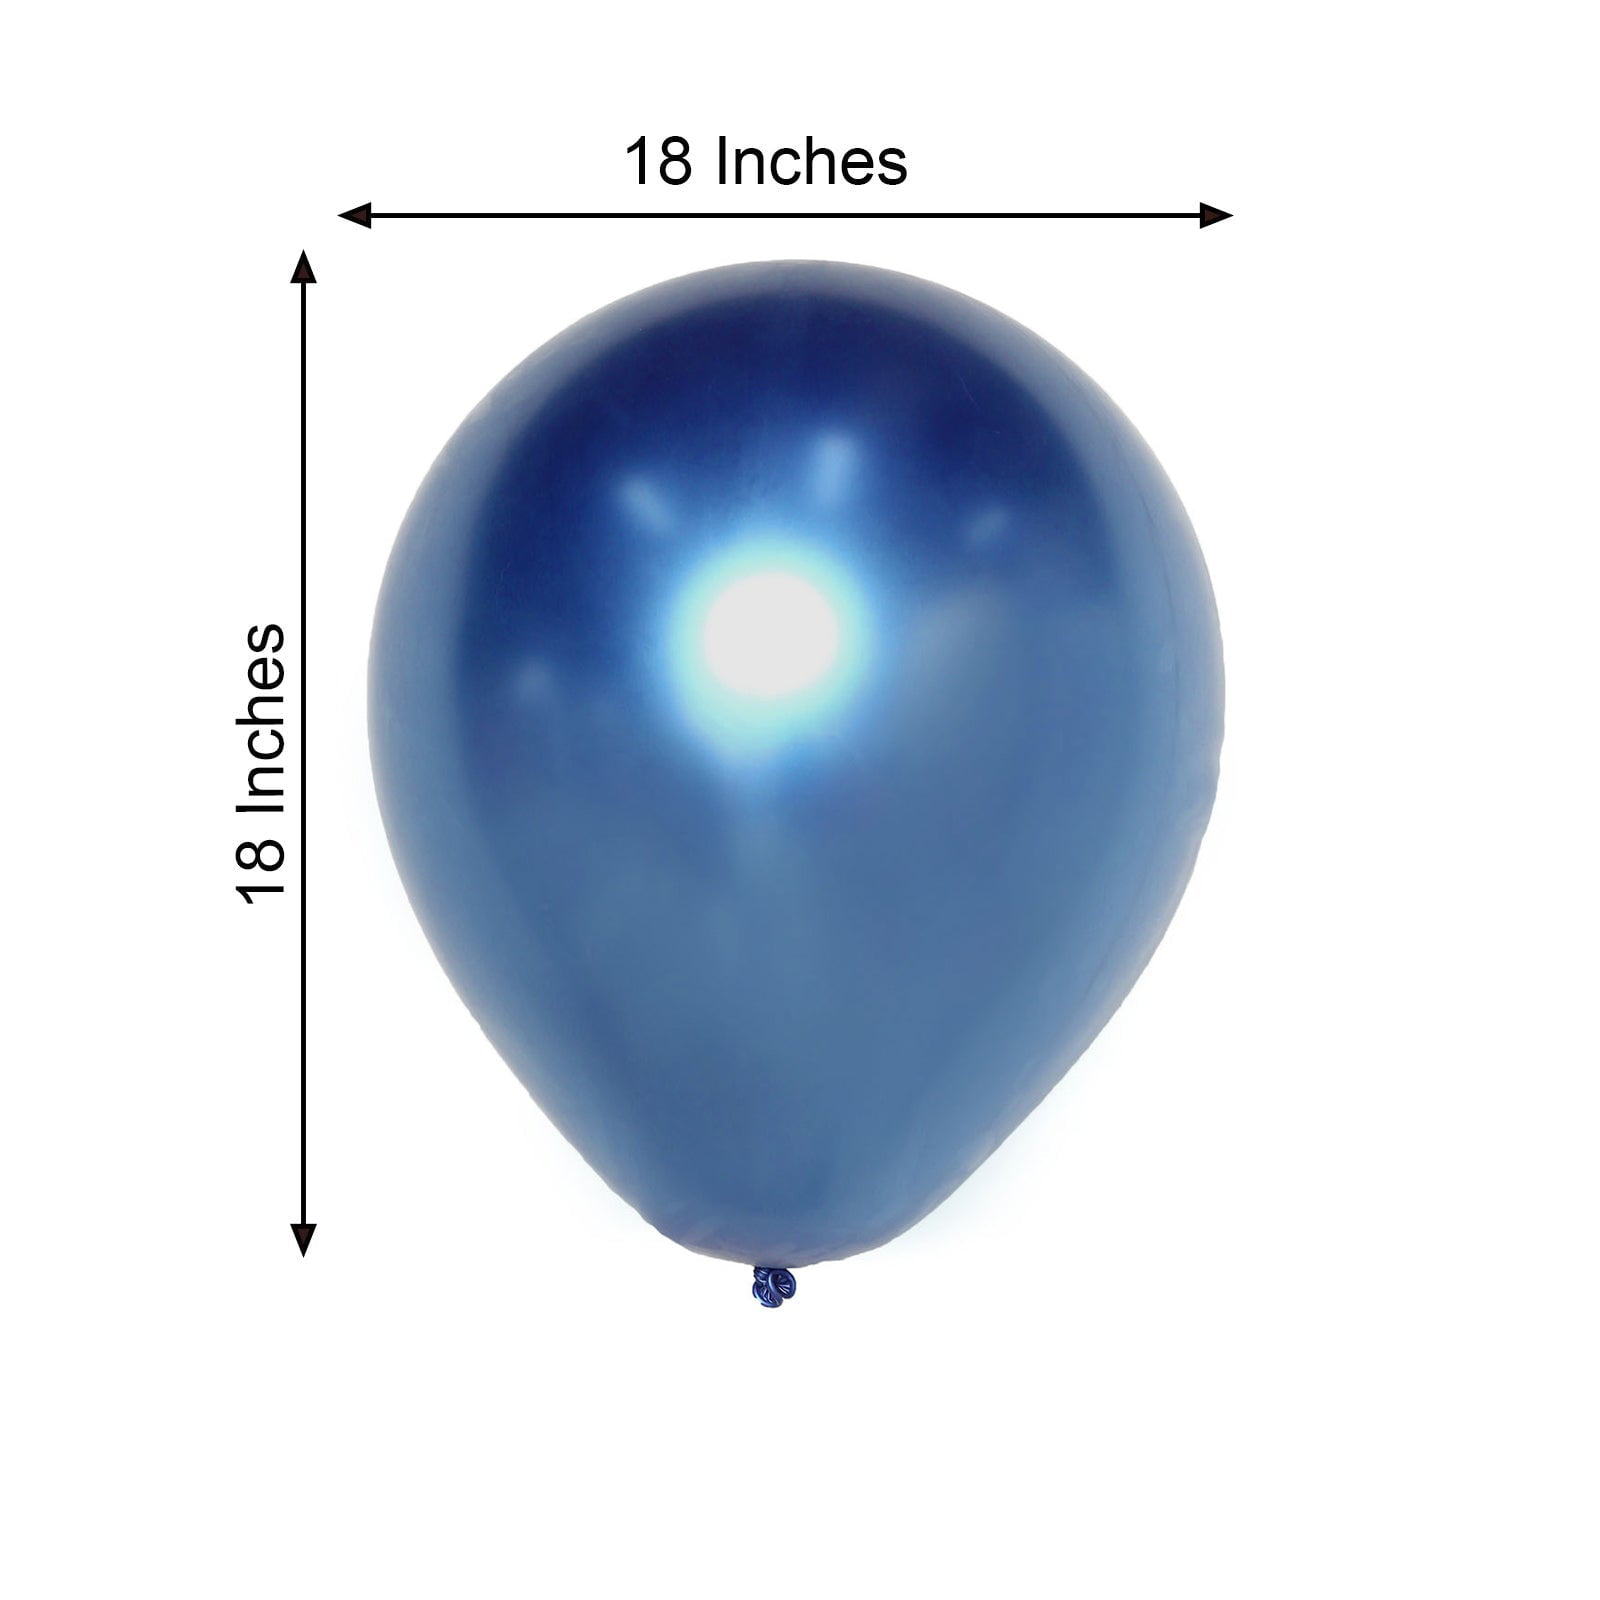 Ballon 18 ans Or métallique en latex de 30 cm REF/BAL00OR01